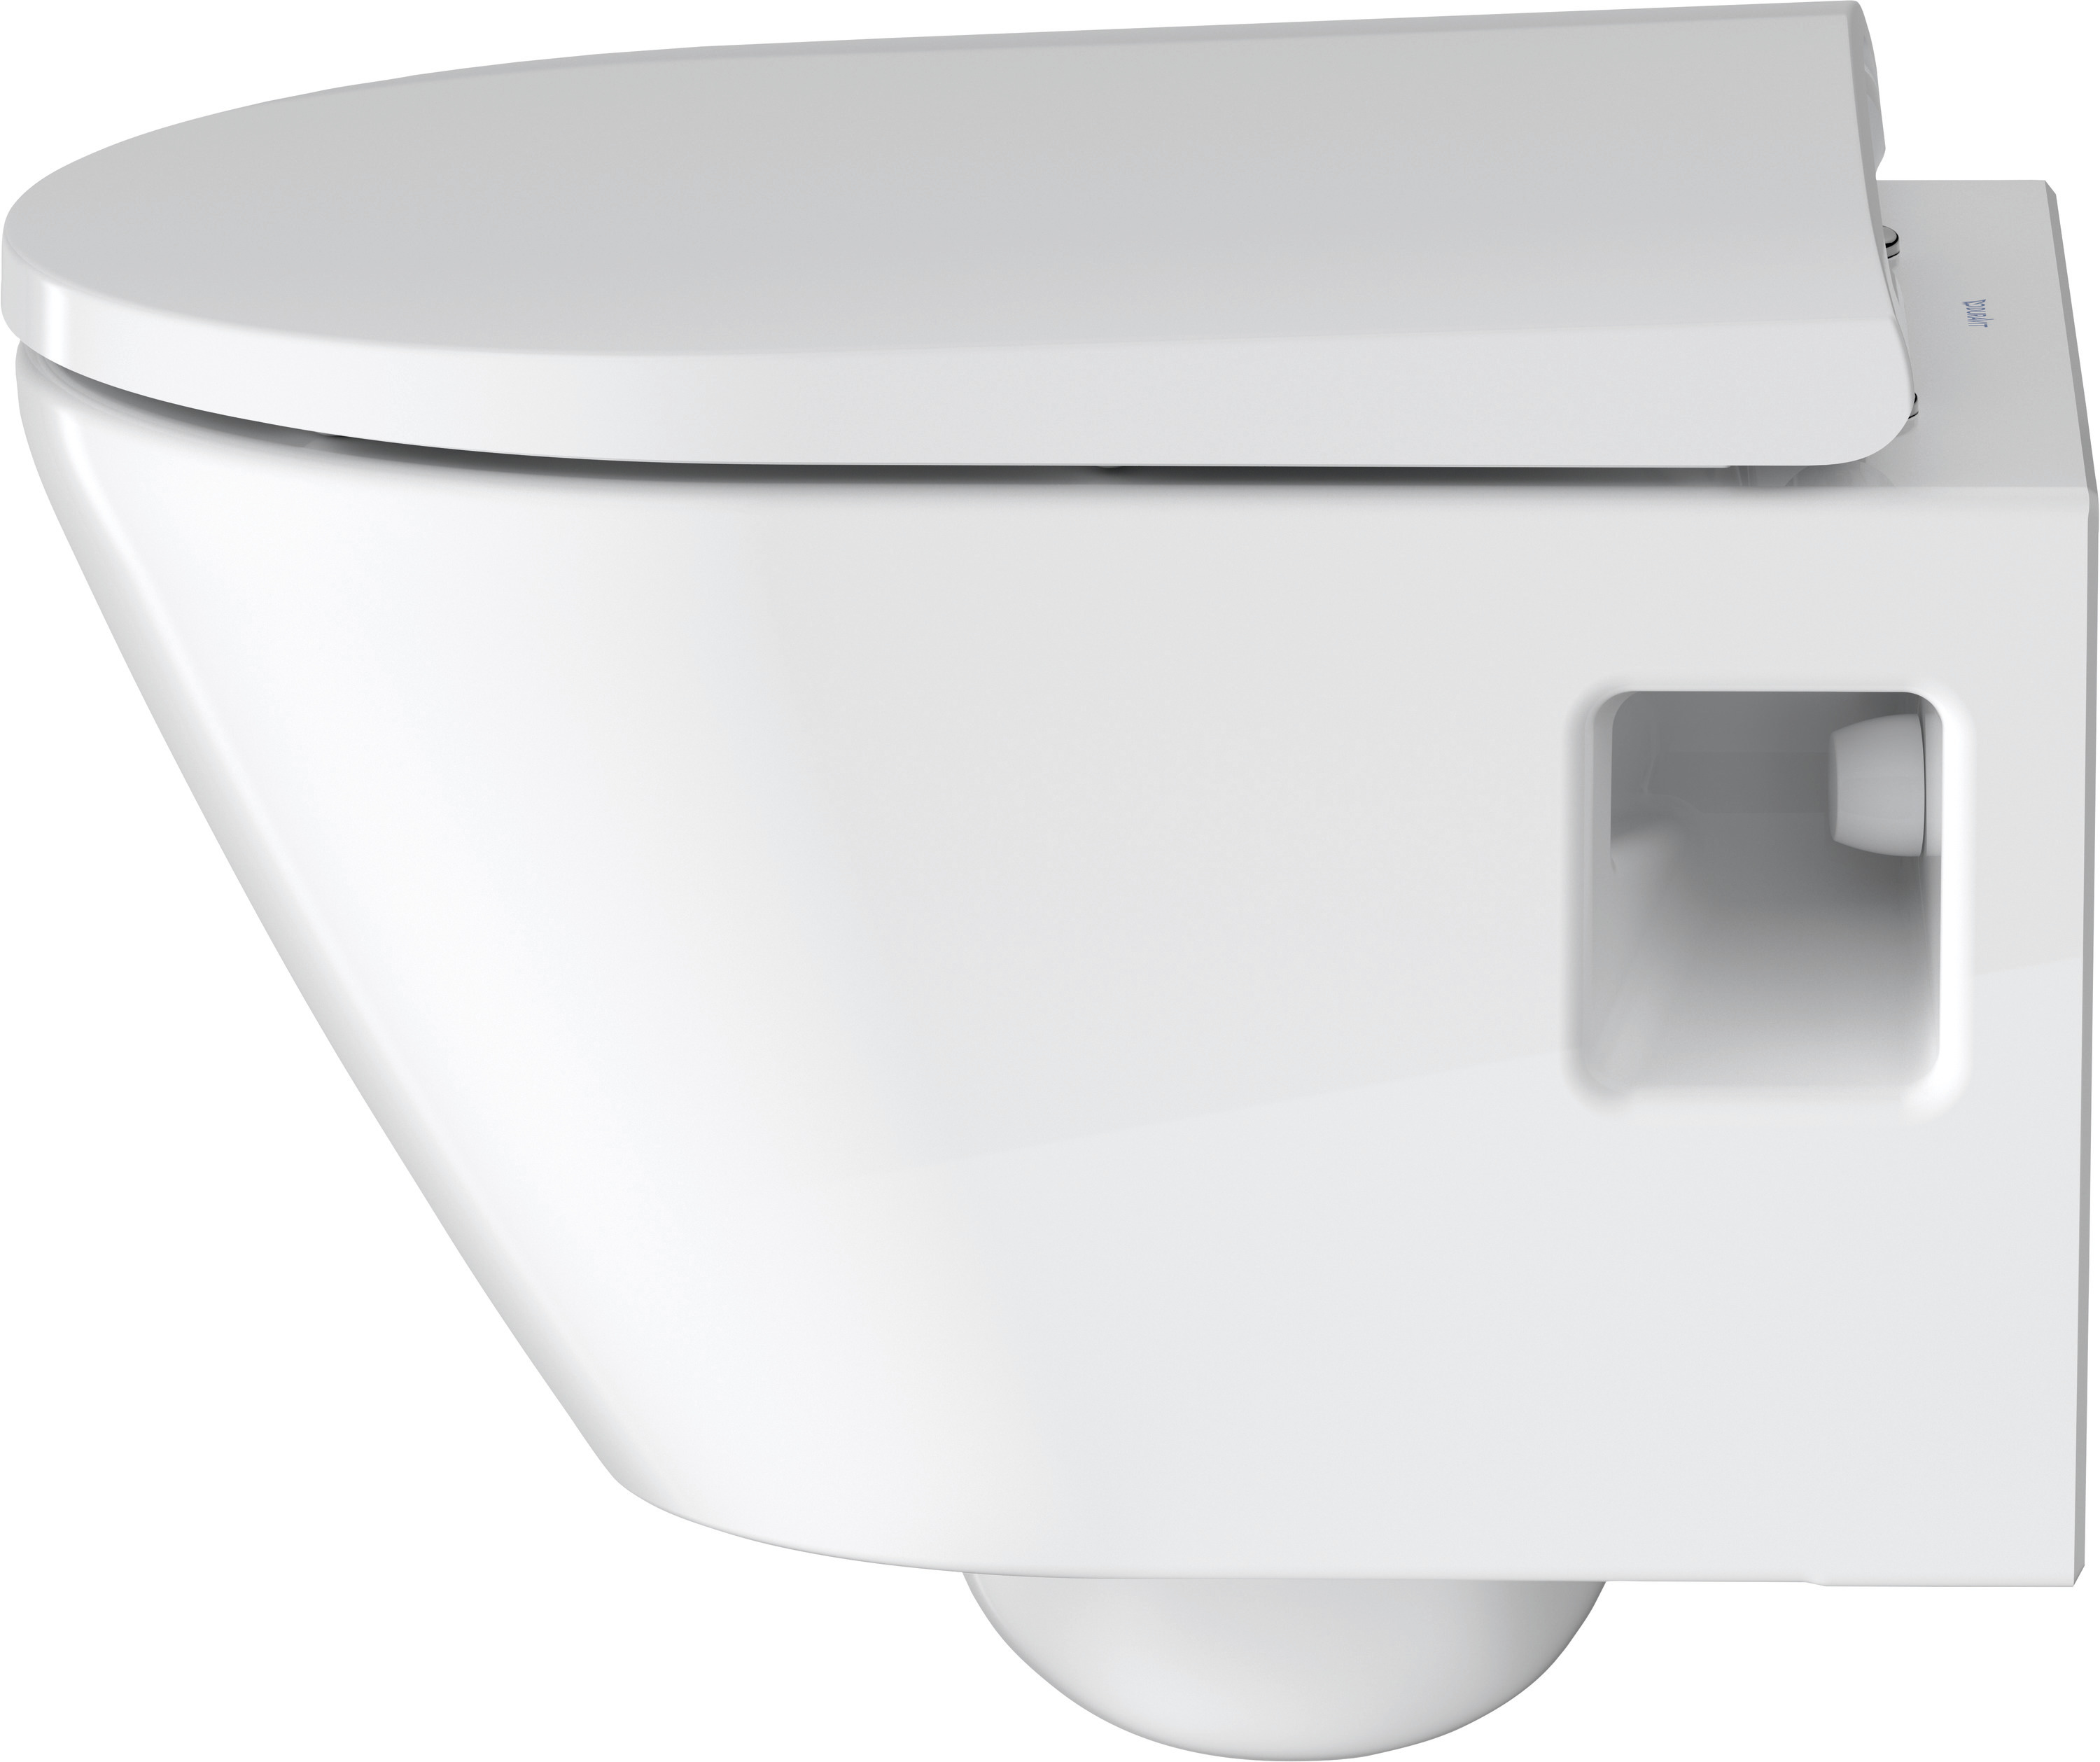 Wand-WC compact 480 mm D-Neo, weiß rimless, Tiefspüler